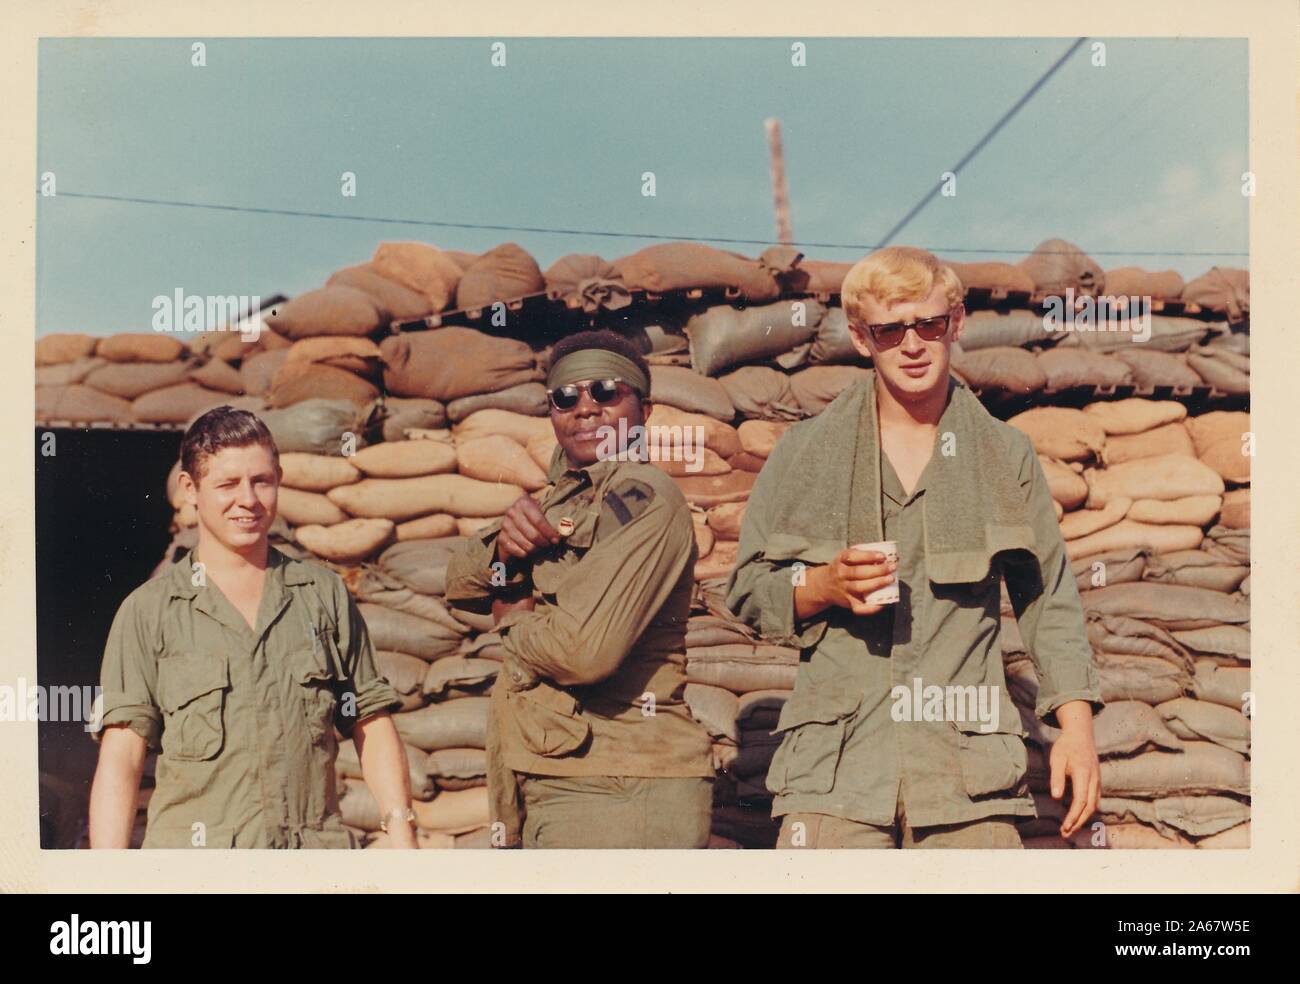 Tre giovani soldati americani, un gruppo multirazziale con due uomini caucasici e un uomo afro-americano, sorridono mentre si posano davanti ai sacchi di sabbia in una fortificazione in Vietnam durante la guerra del Vietnam, 1975. () Foto Stock